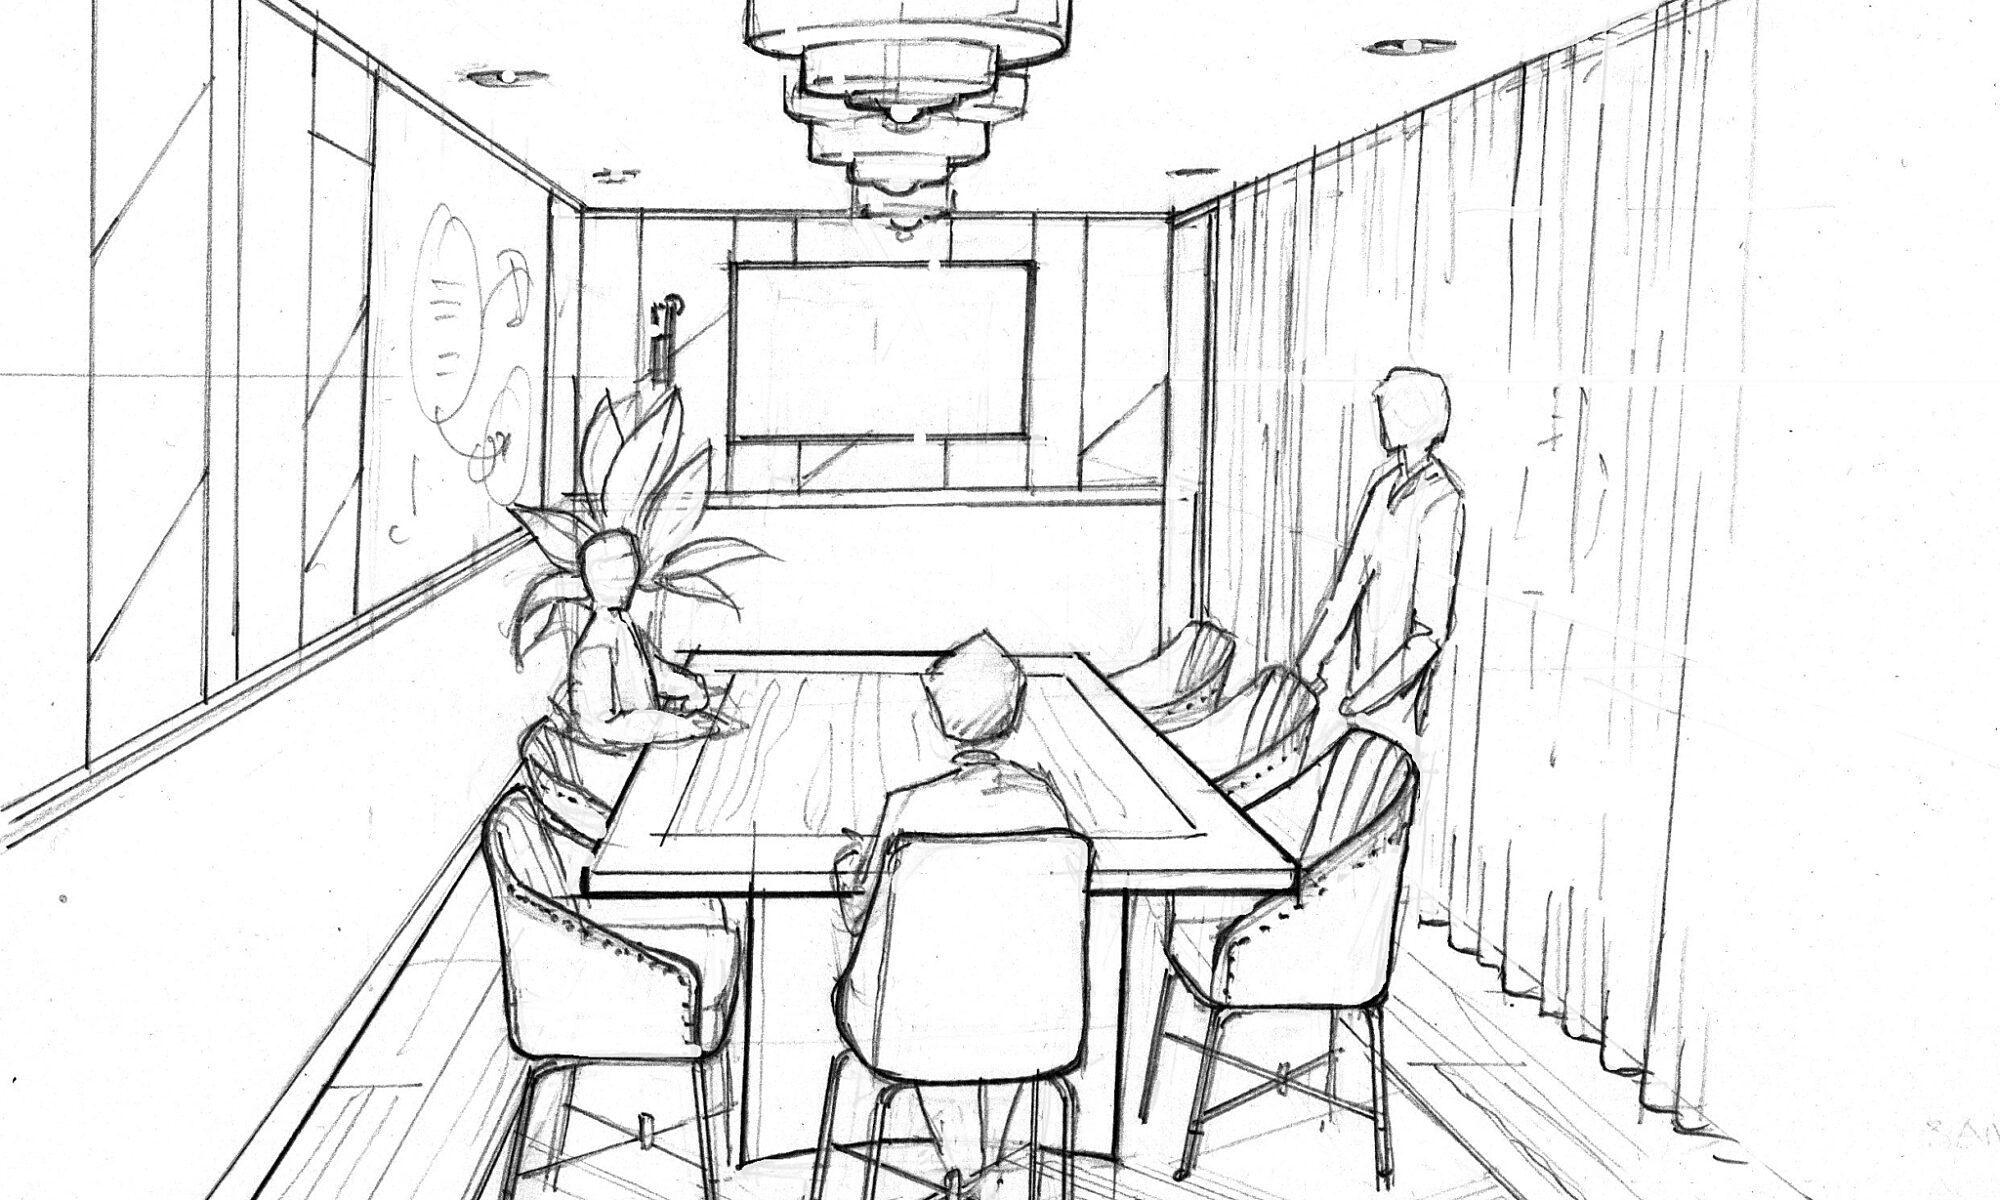 GPE Meeting Room Sketch